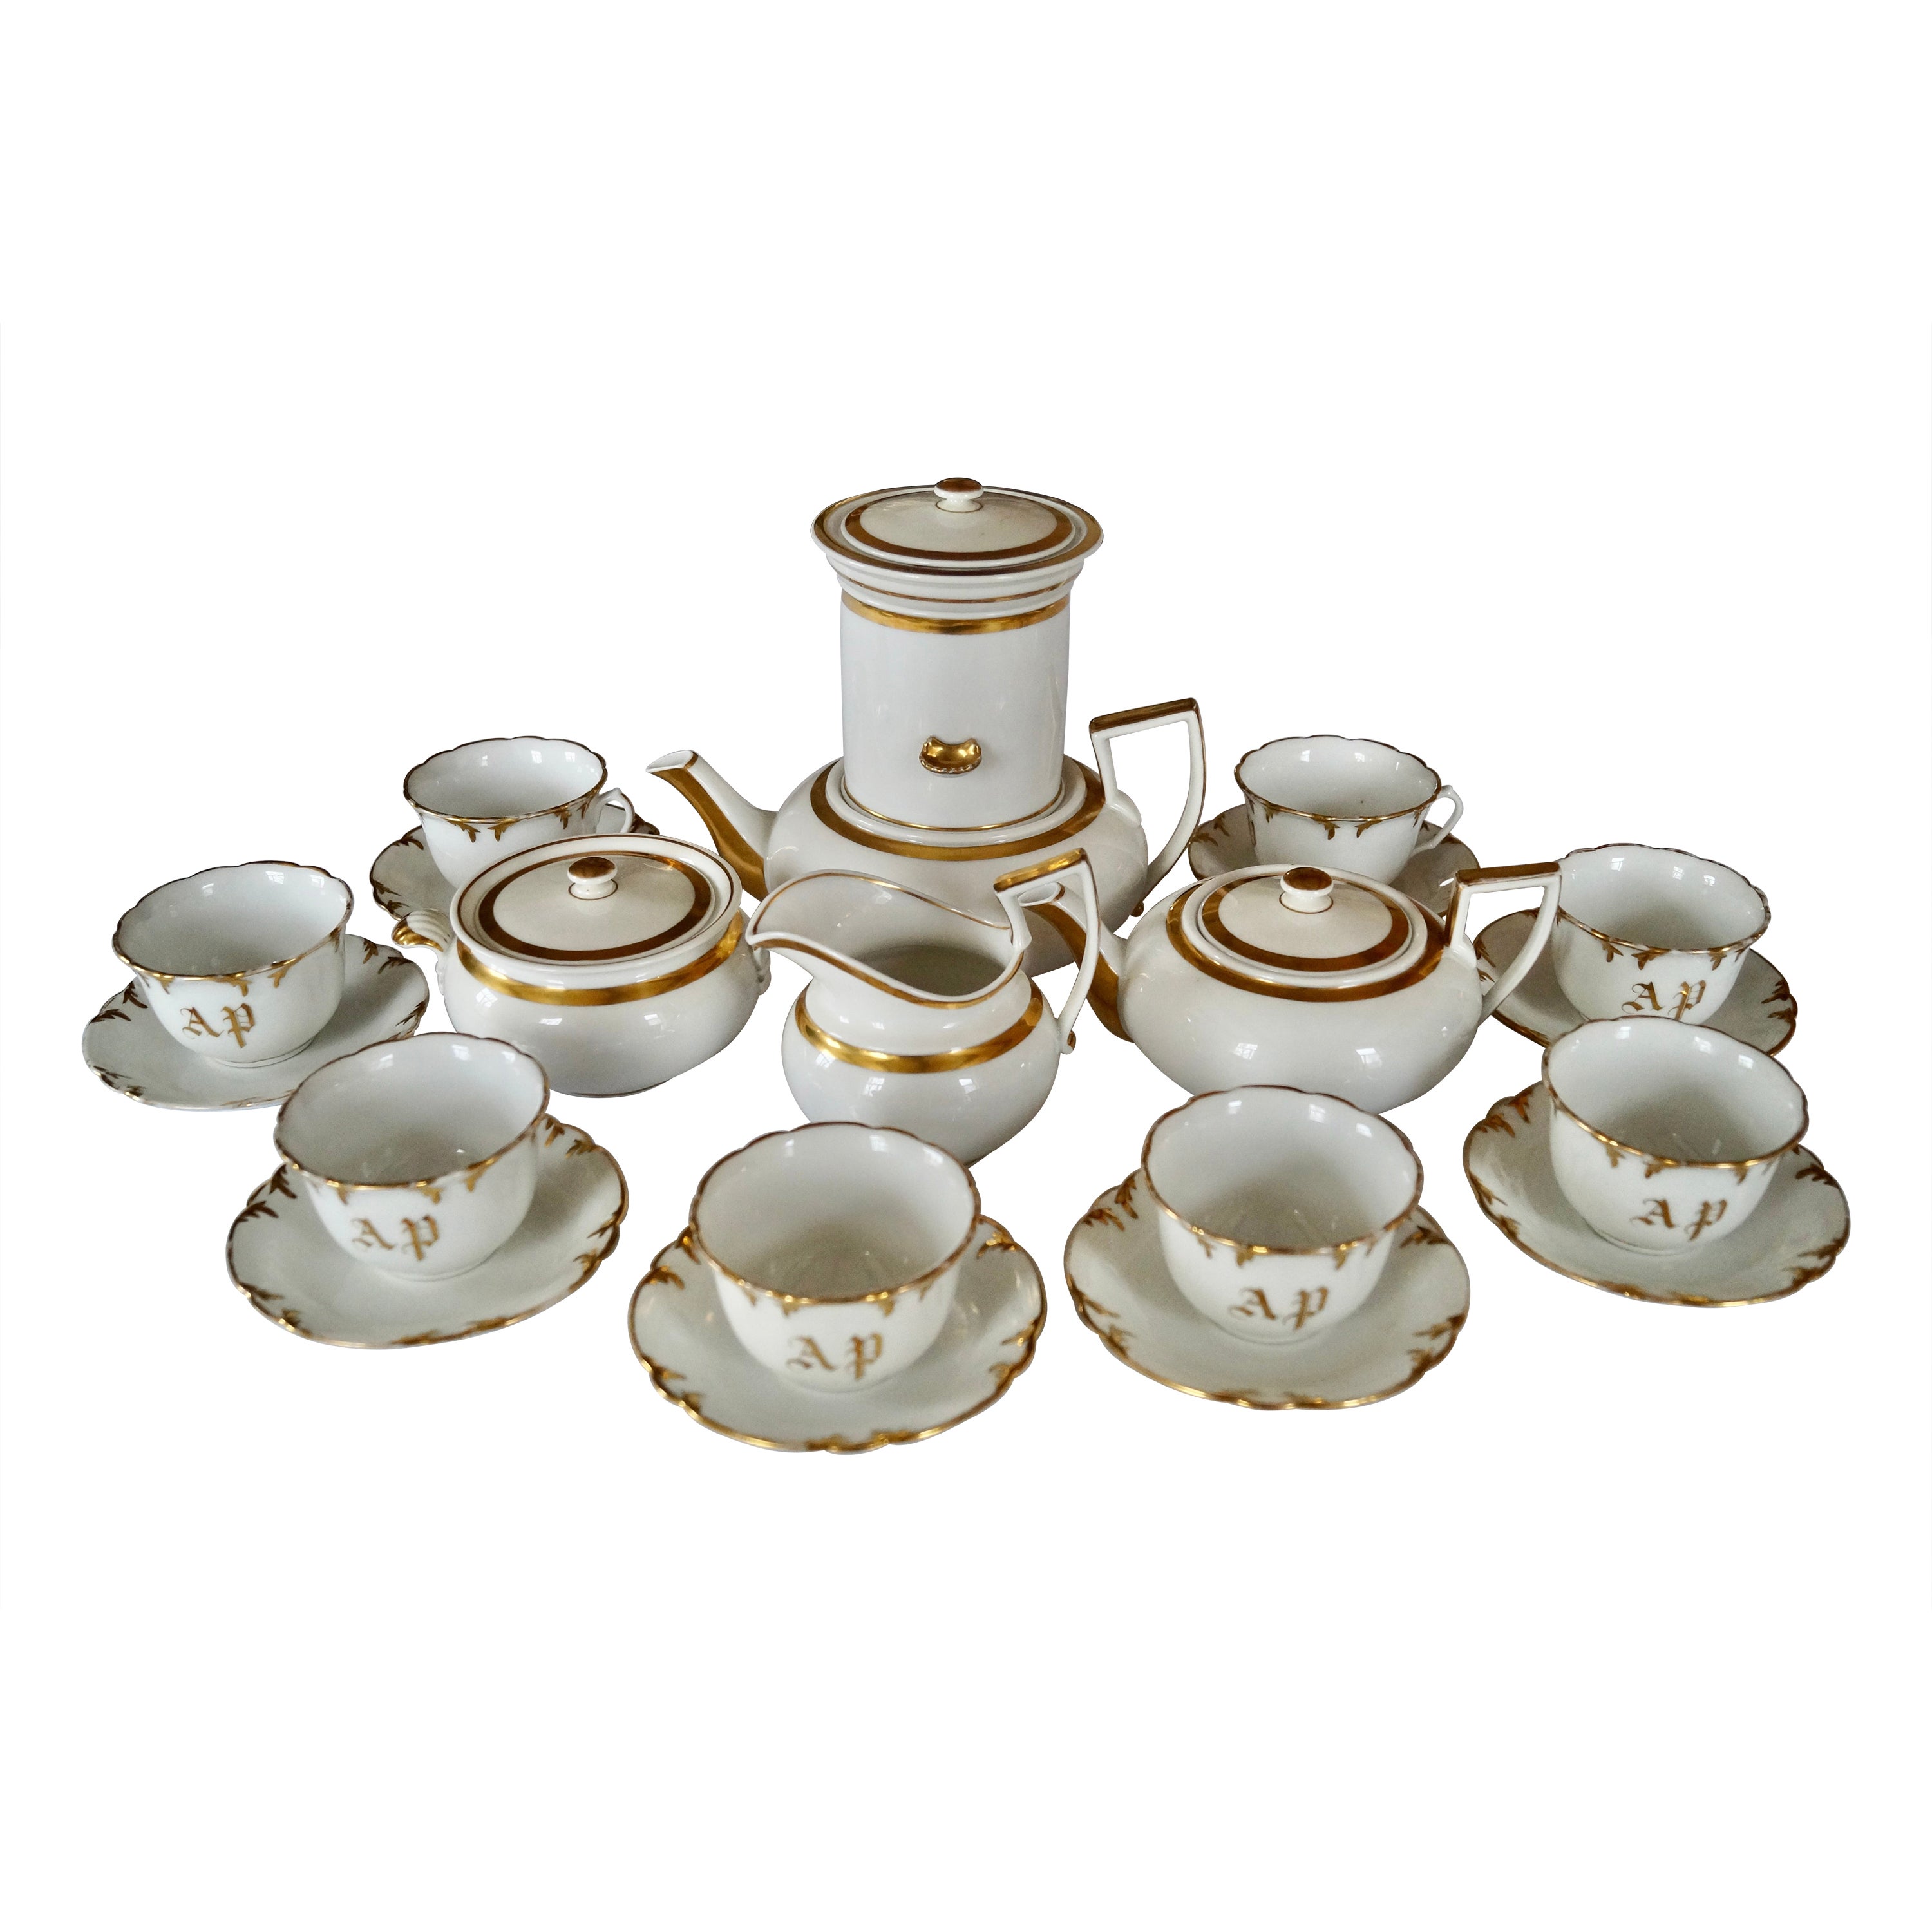 Schöne Seltene Form Antike Old Paris Porzellan Kaffee Tee Set ca 1850-1880